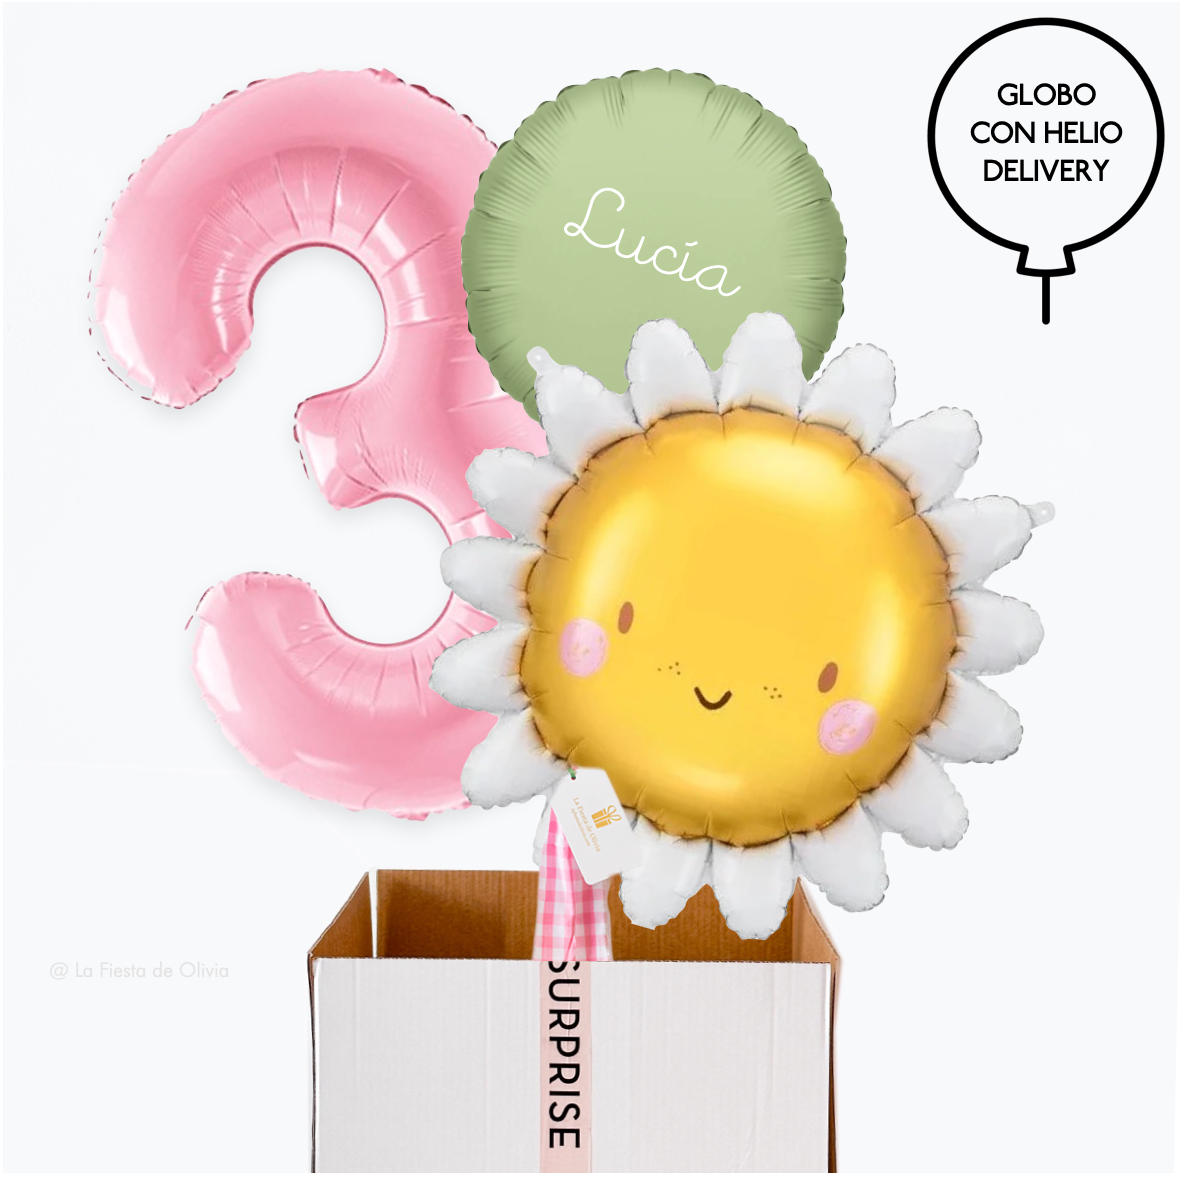  Buquê de balões inflados para aniversário com tema de "Sunshine"